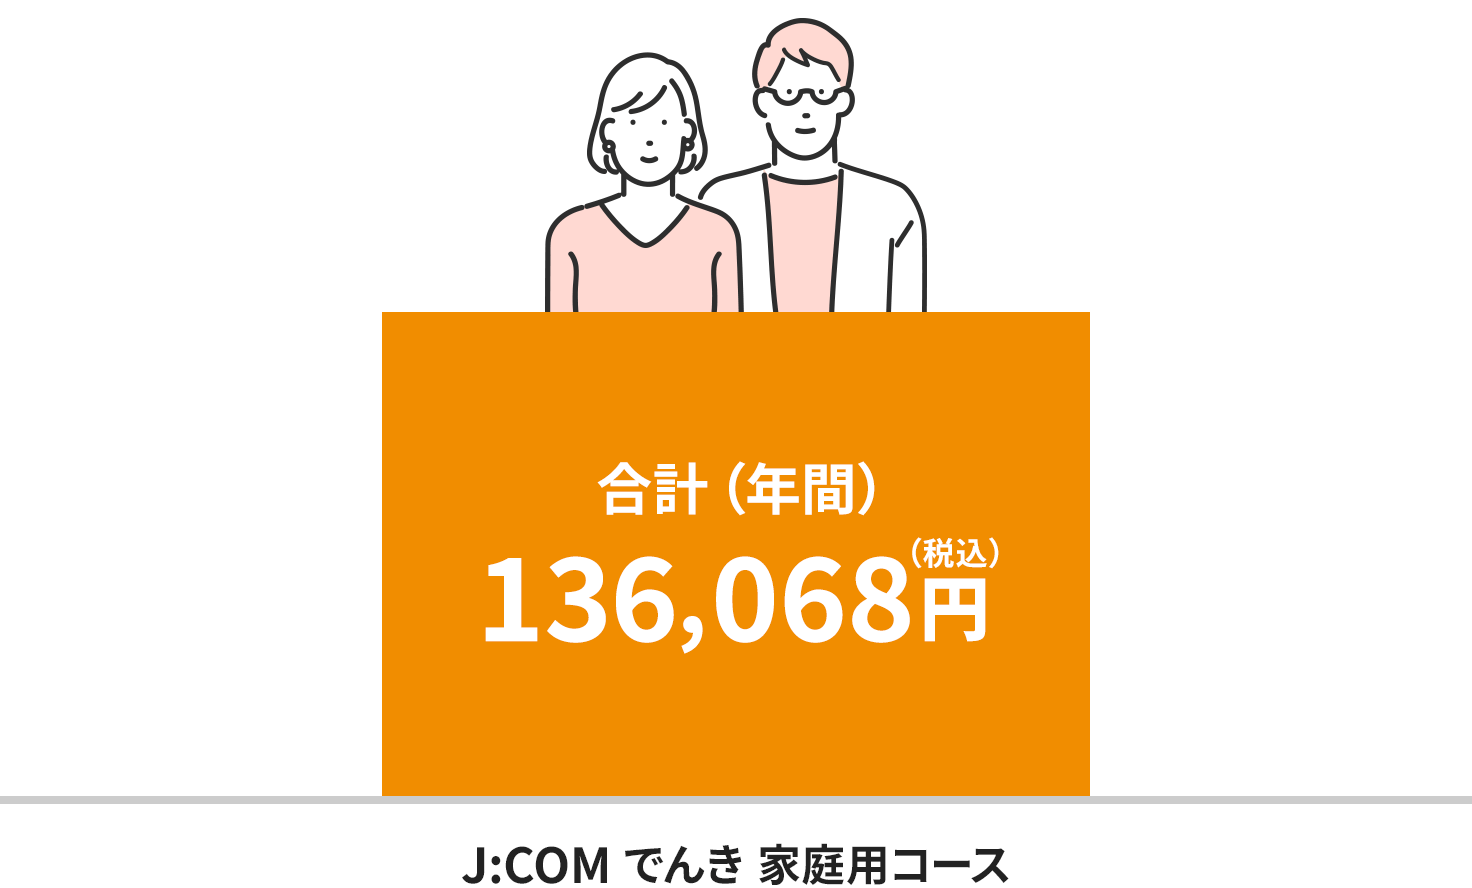 Hình ảnh phí tại khu vực Điện lực Kyushu (dành cho hộ gia đình hai người)